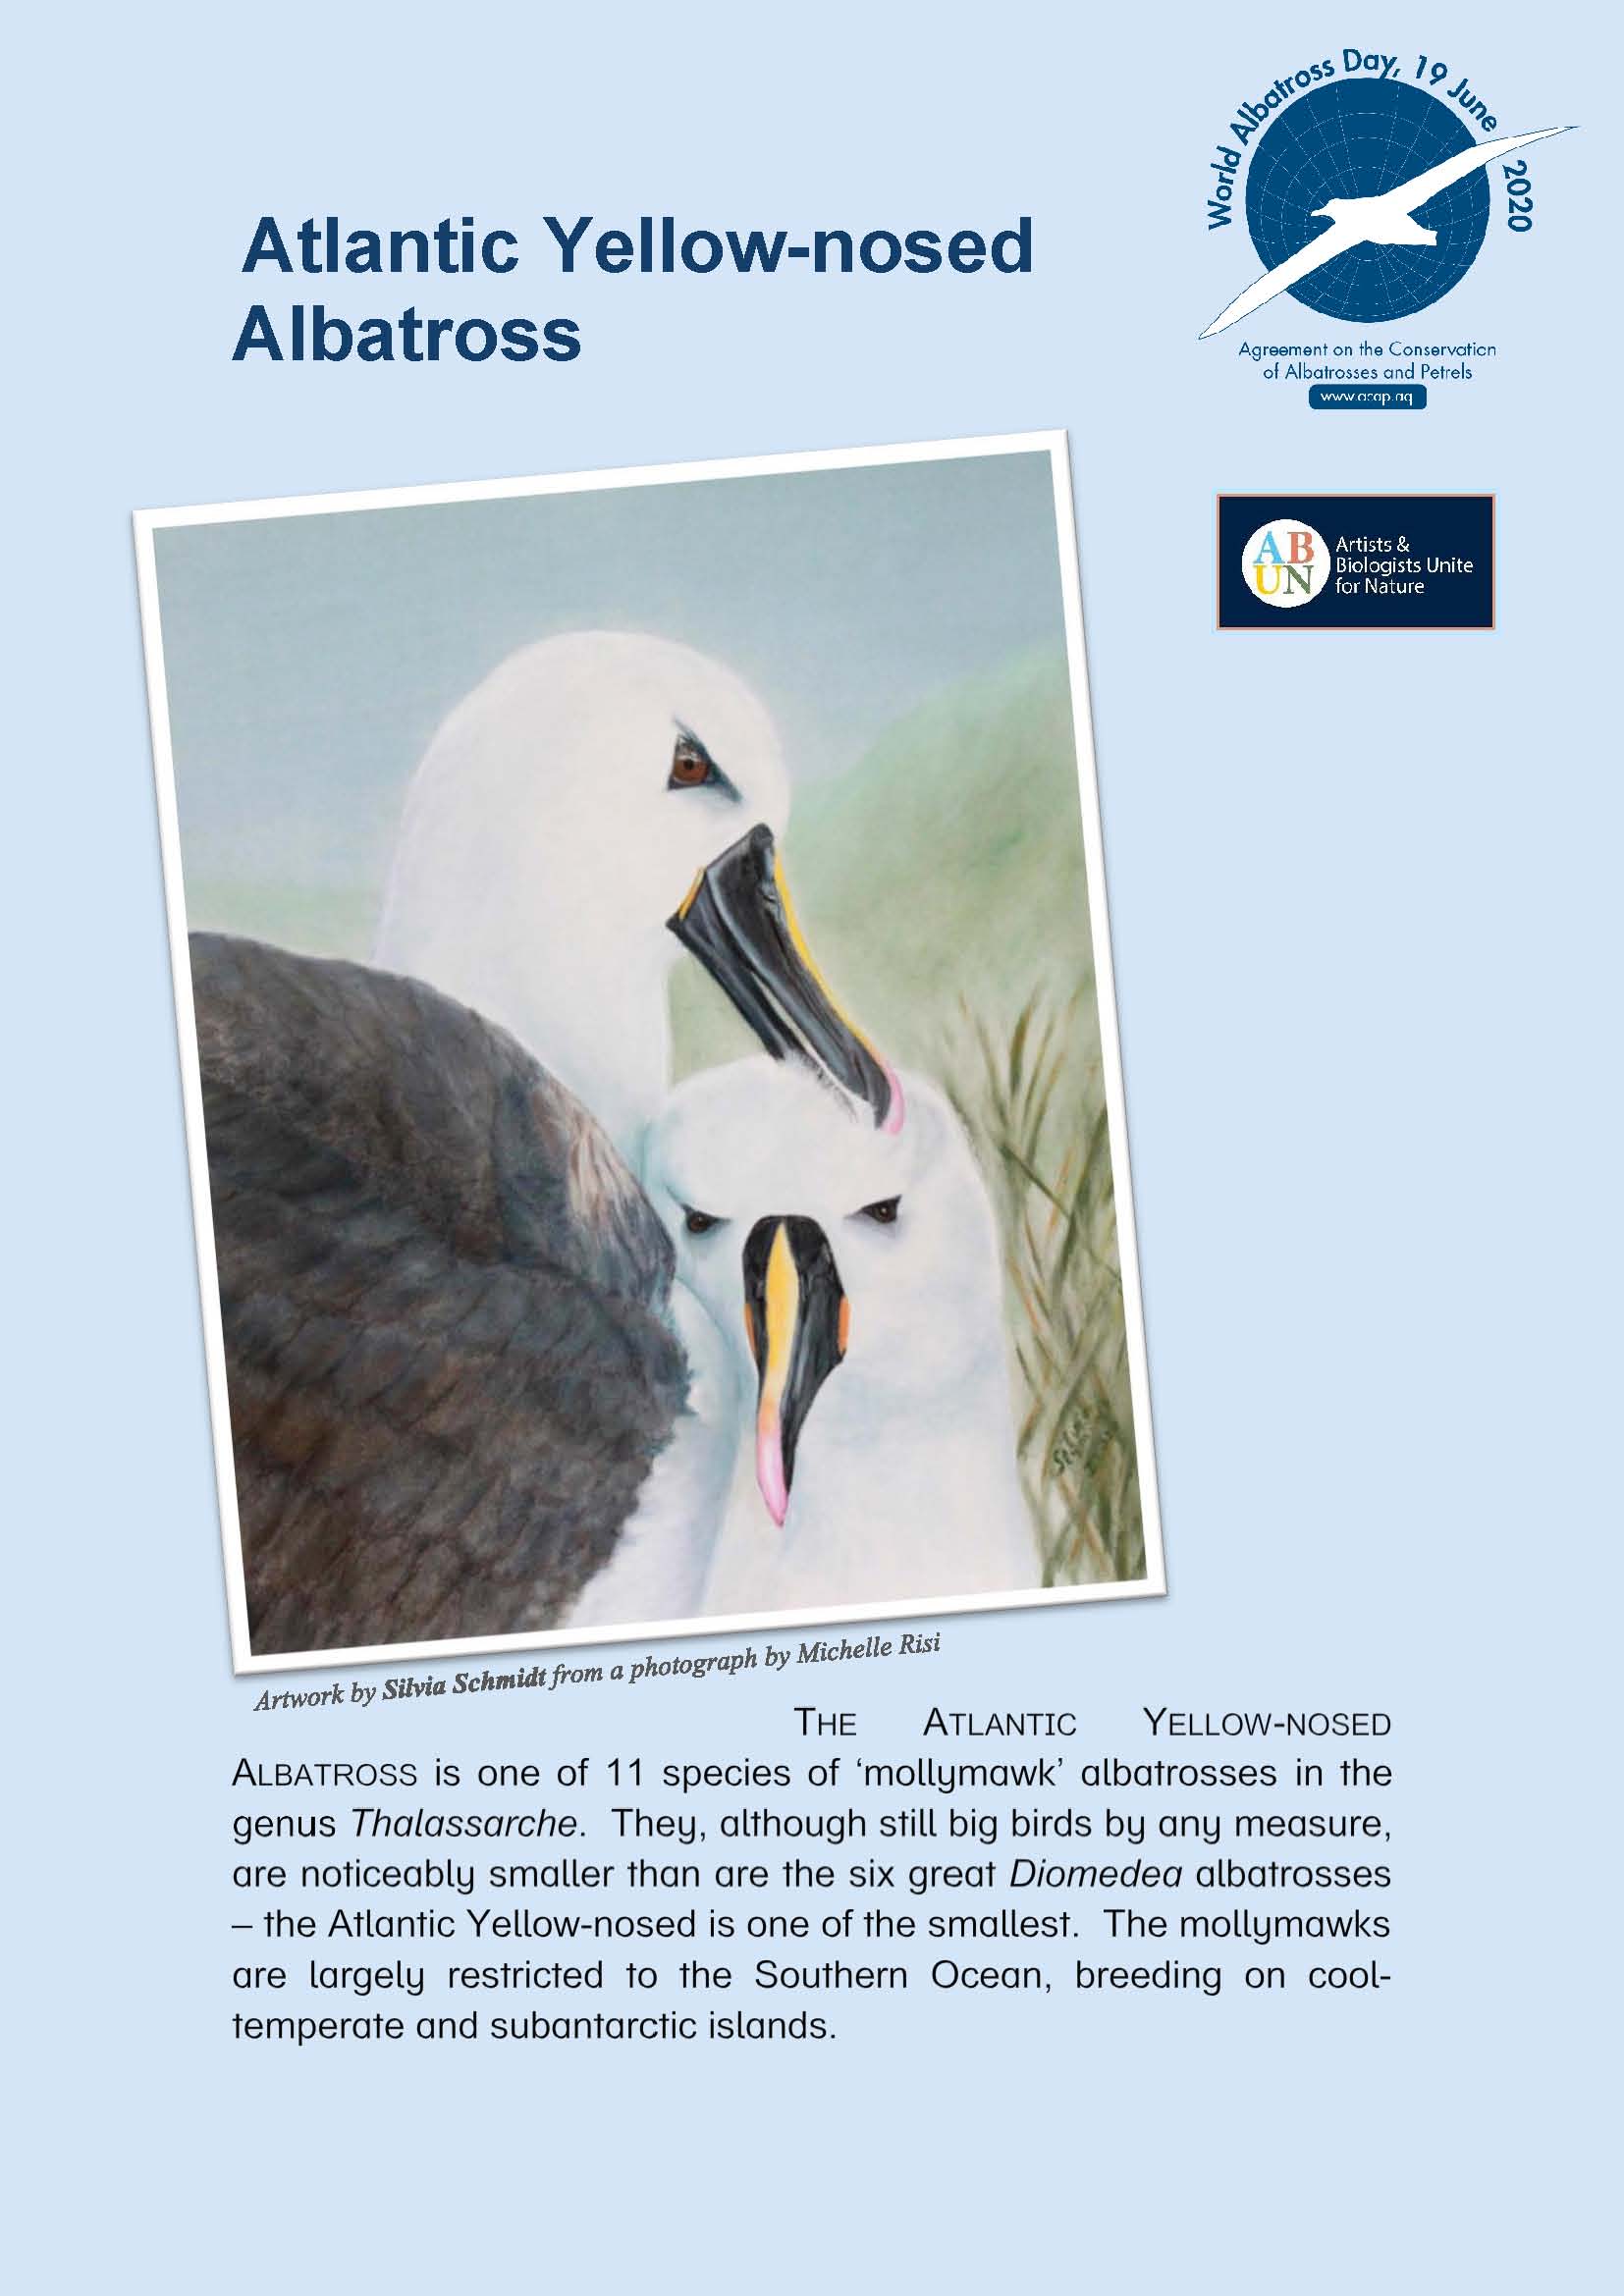 Albatros de pico fino del Atlántico